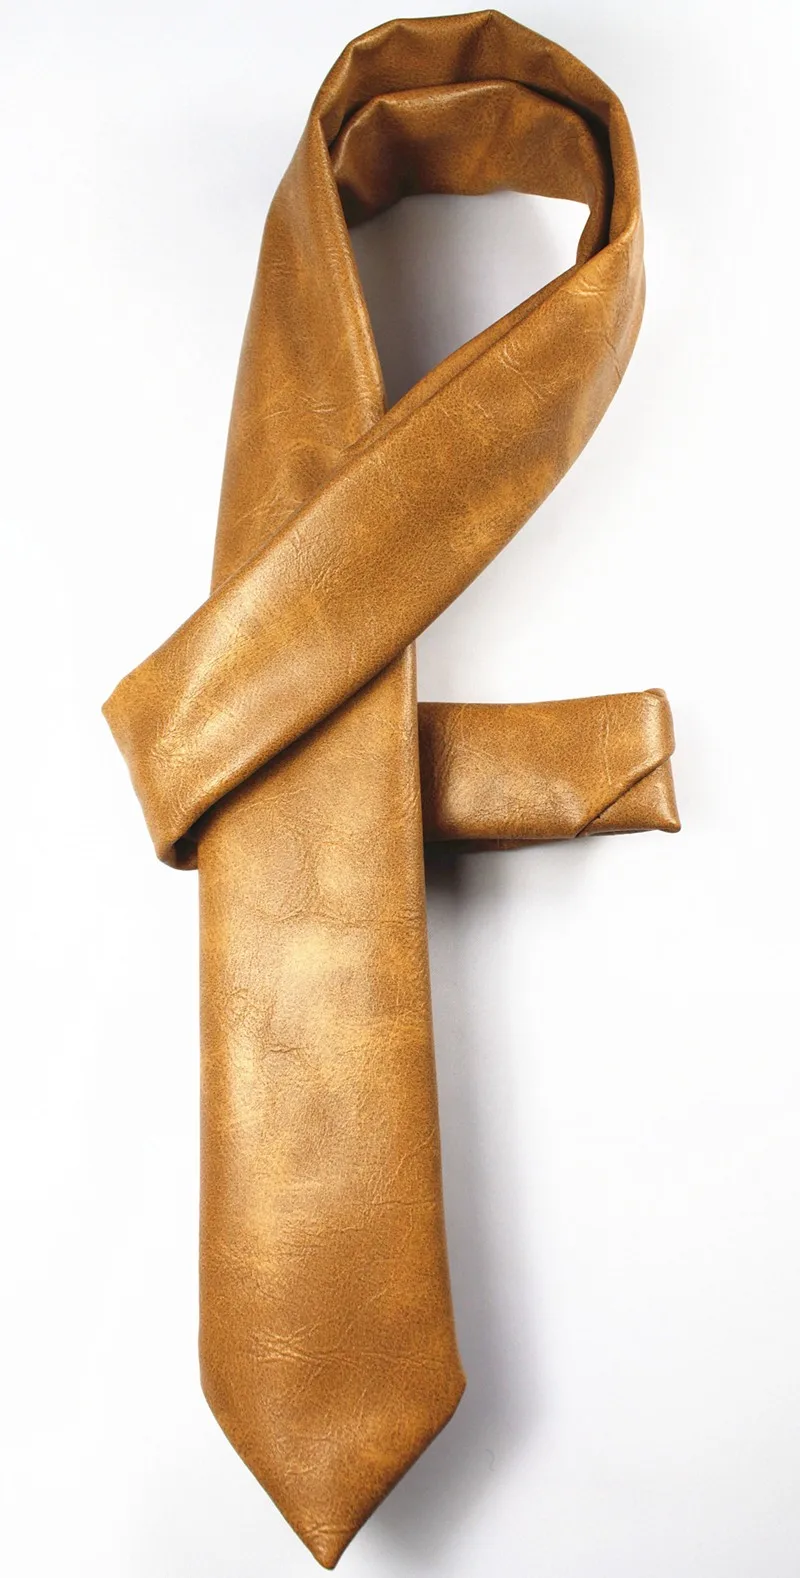 RBOCOTT Дизайн Кожаный Галстук модный тонкий галстук для мужчин аксессуары для мужчин s микрофибра Нано водонепроницаемый шеи галстуки 6 см Вечерние